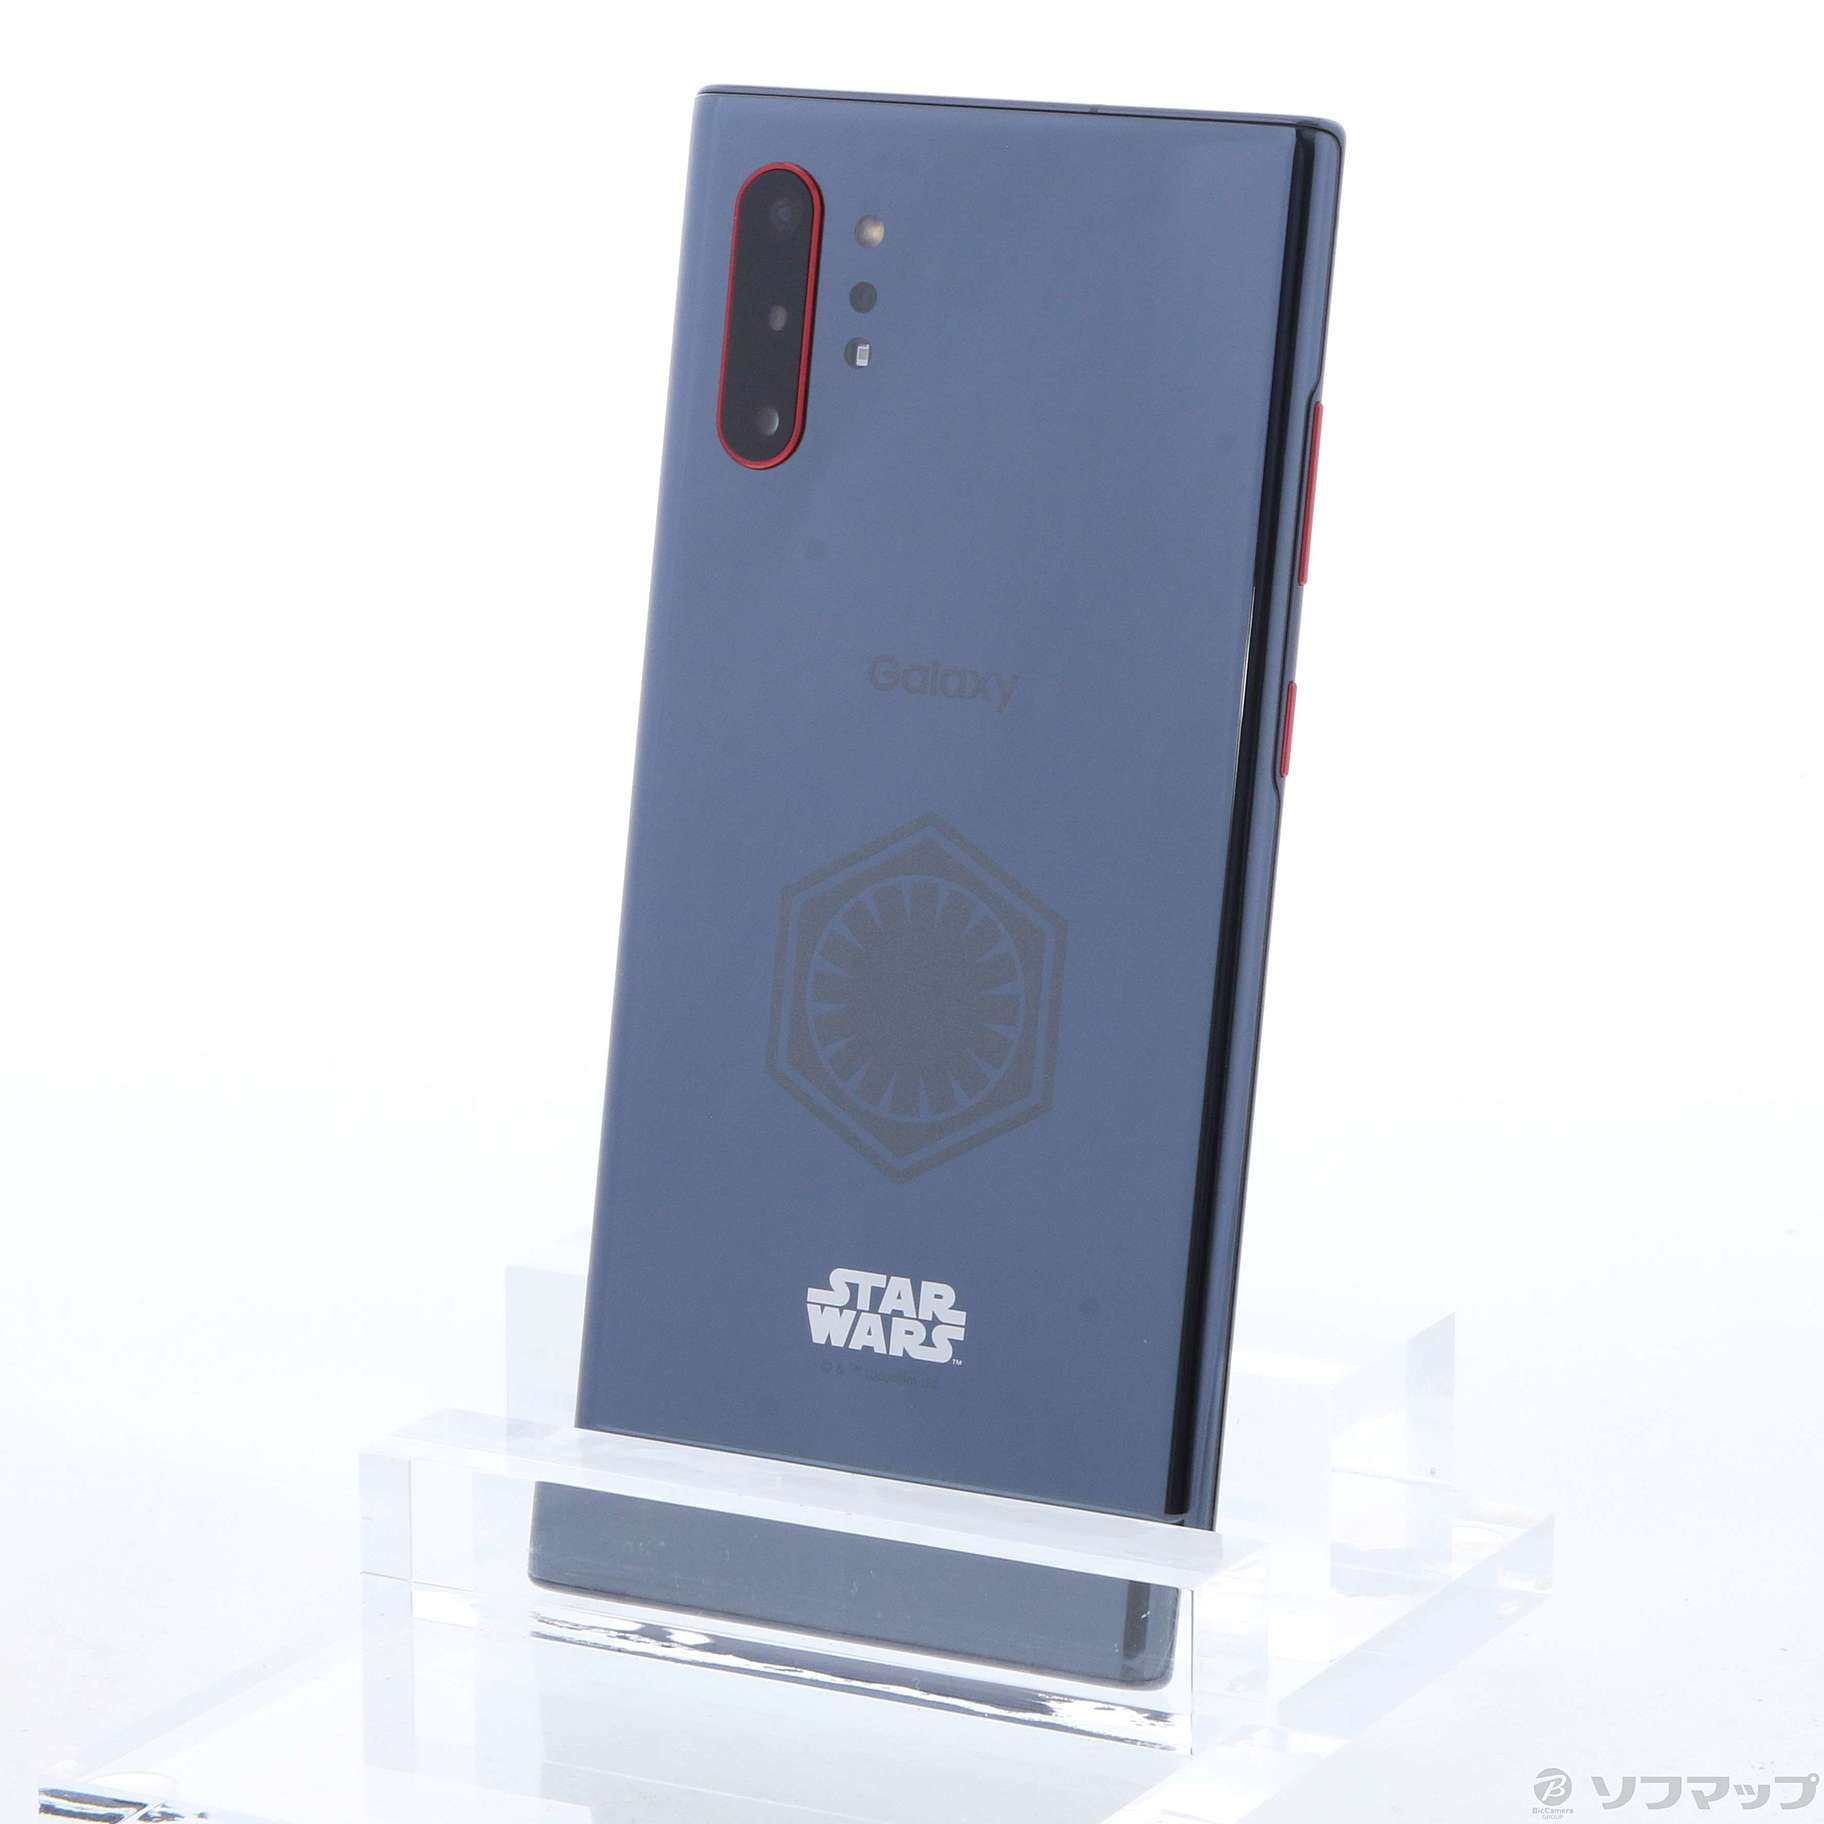 中古】Galaxy Note10+ Star Wars Special Edition 256GB オーラ